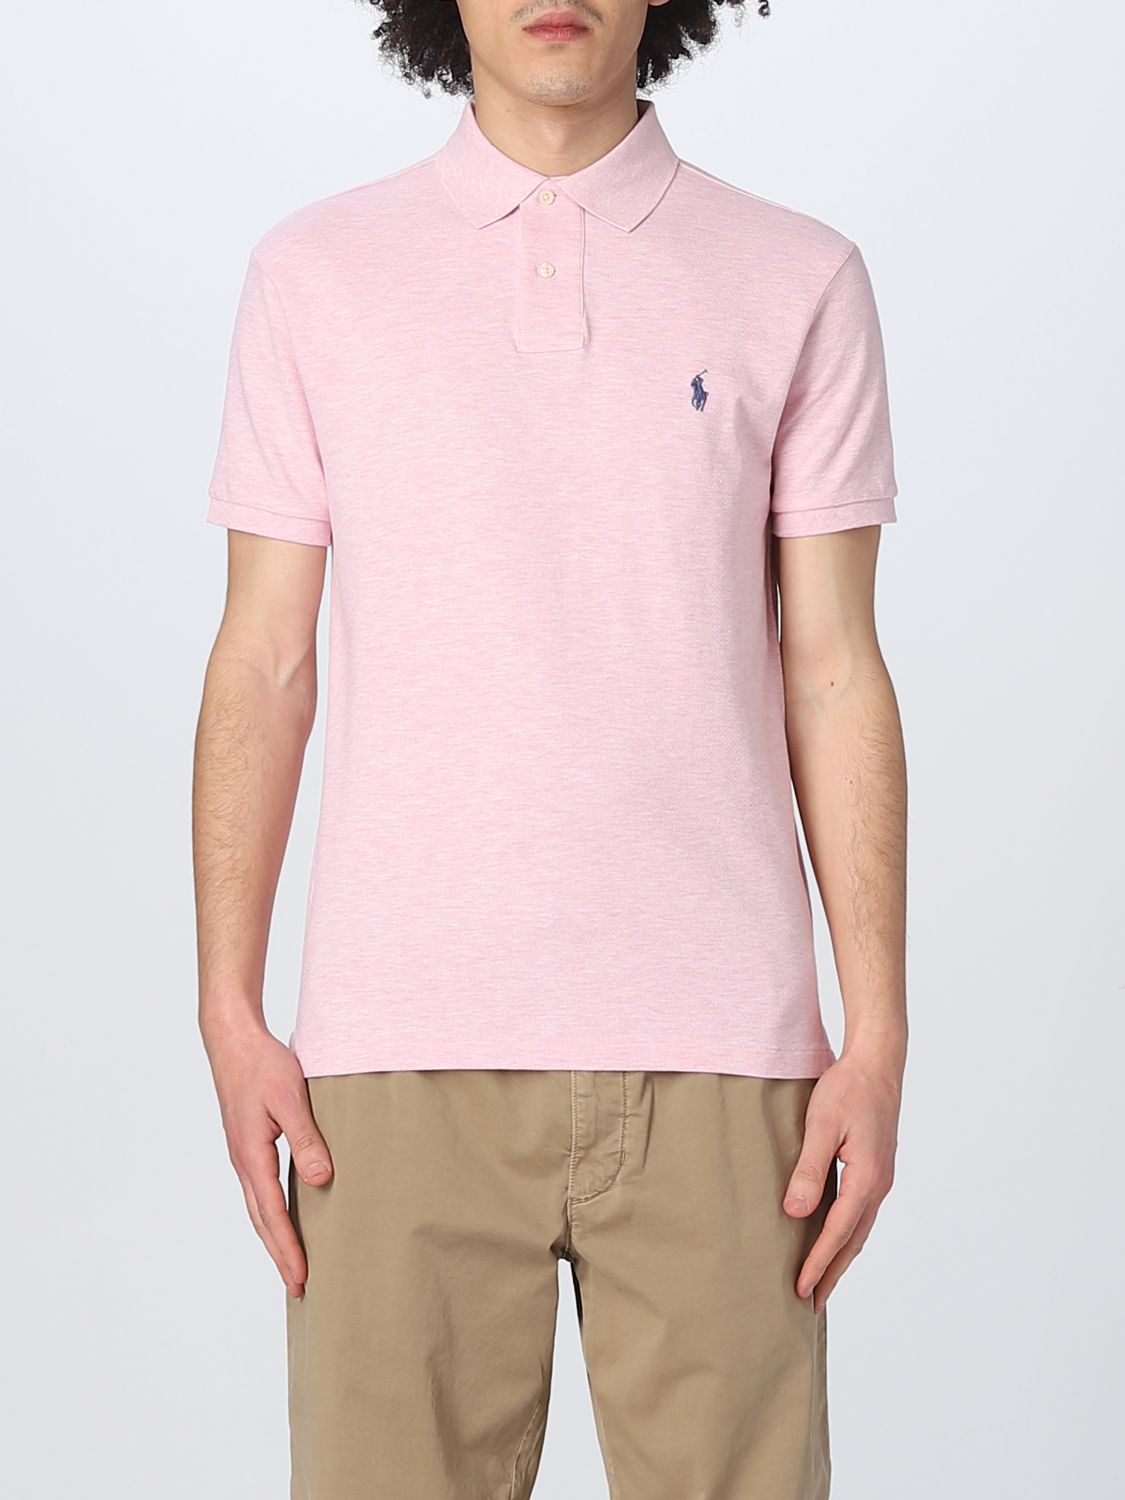 POLO RALPH LAUREN: polo shirt for men - Pink | Polo Ralph Lauren polo shirt  710536856 online on 